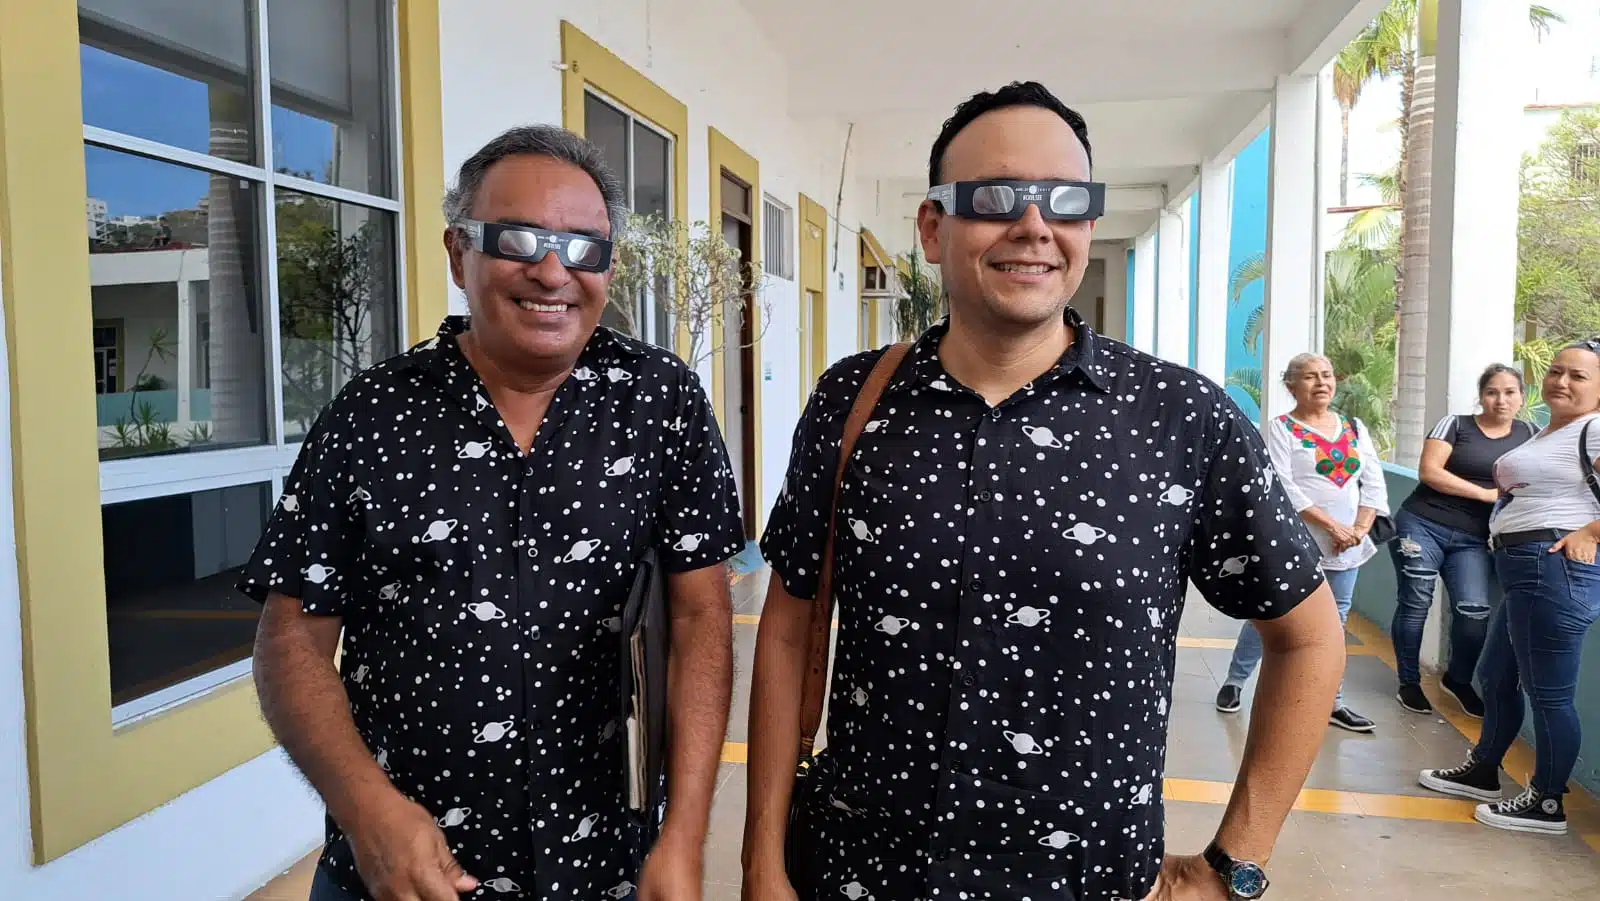 ¿Estás listo para el eclipse? Sociedad Astronómica de Mazatlán organiza actividad para disfrutarlo